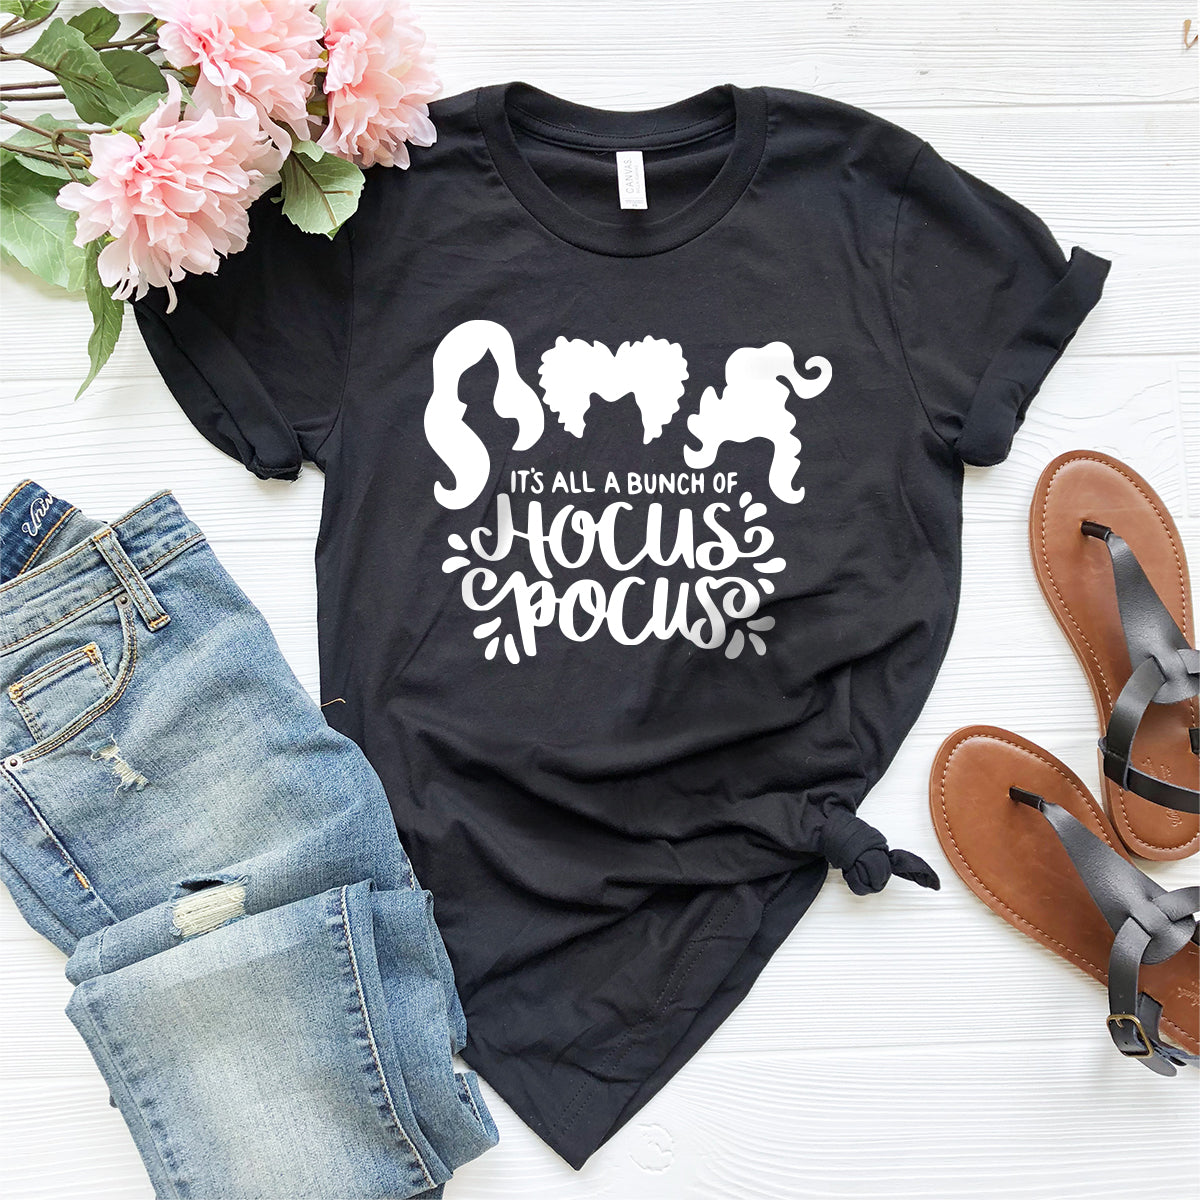 Hocus Pocus T-Shirt, Halloween Shirt, Hocus Pocus Shirt, Sanderson Sisters Shirt, Disney Halloween Shirt, Hocu Pocu T Shirt, Fall Shirt - Fastdeliverytees.com